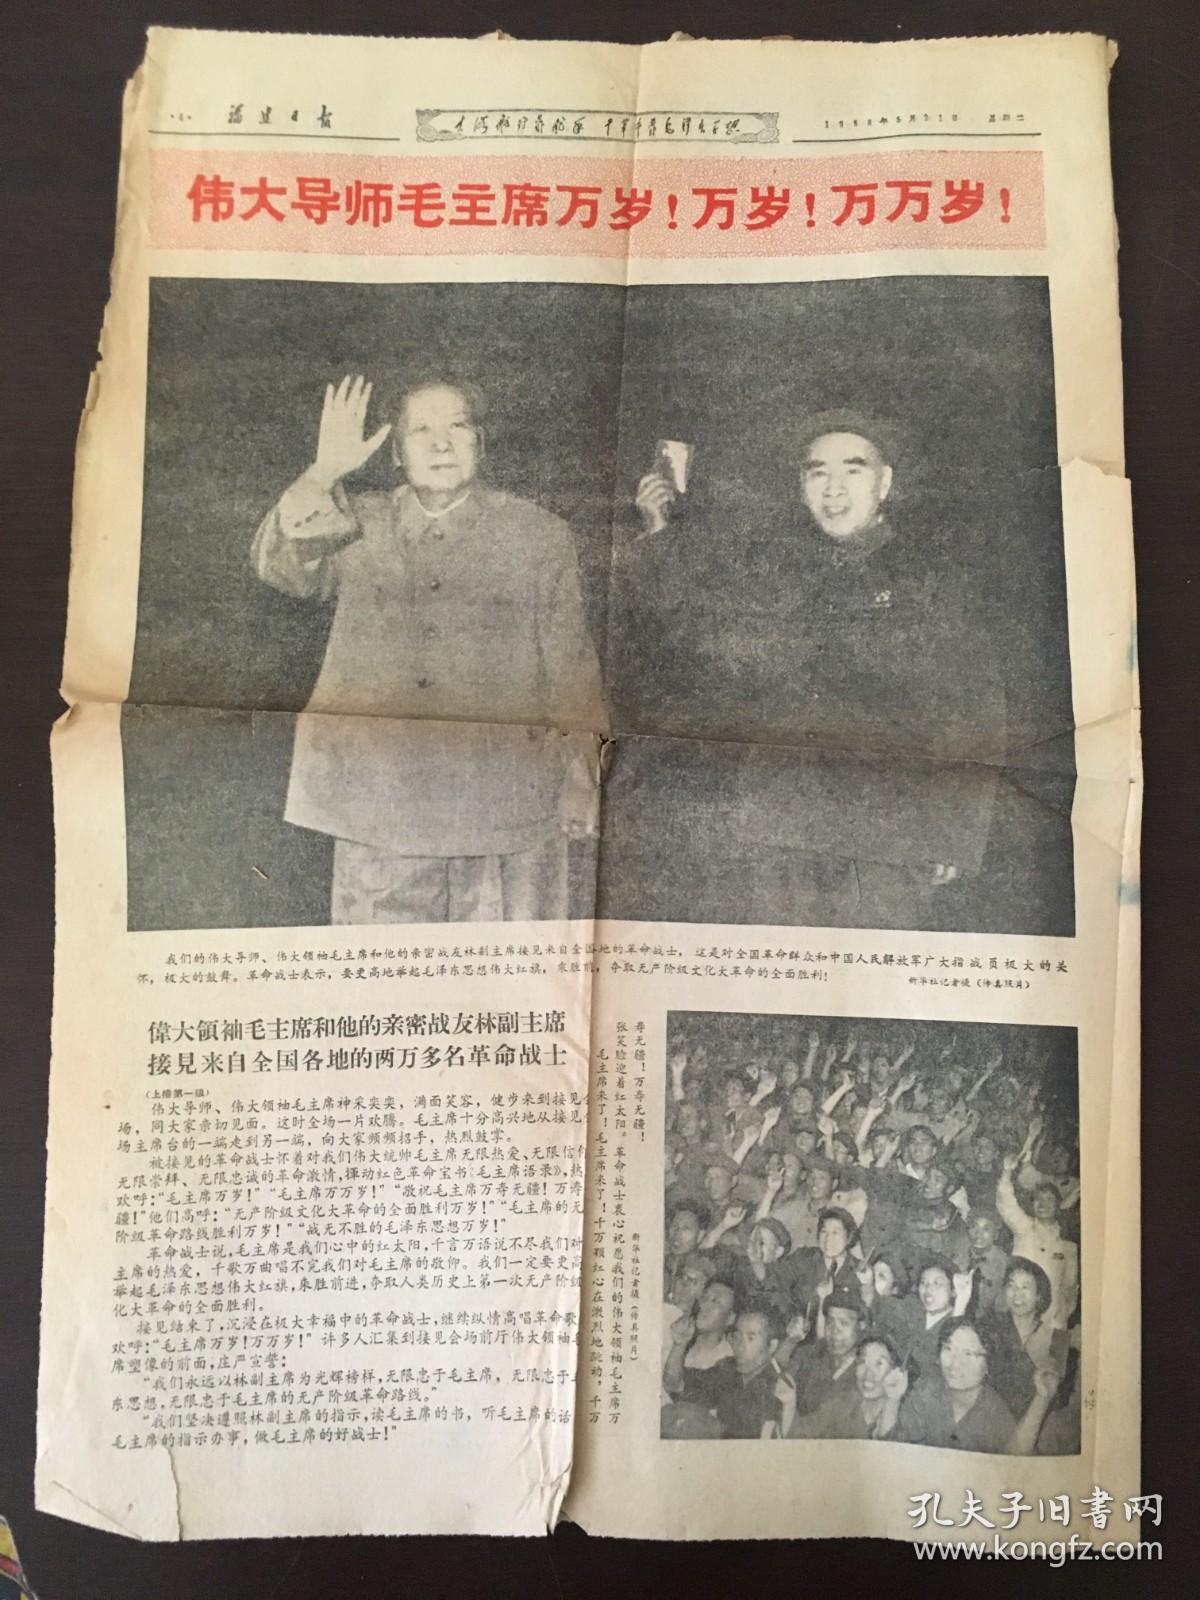 福建日报 1958年5月21日 毛林合影